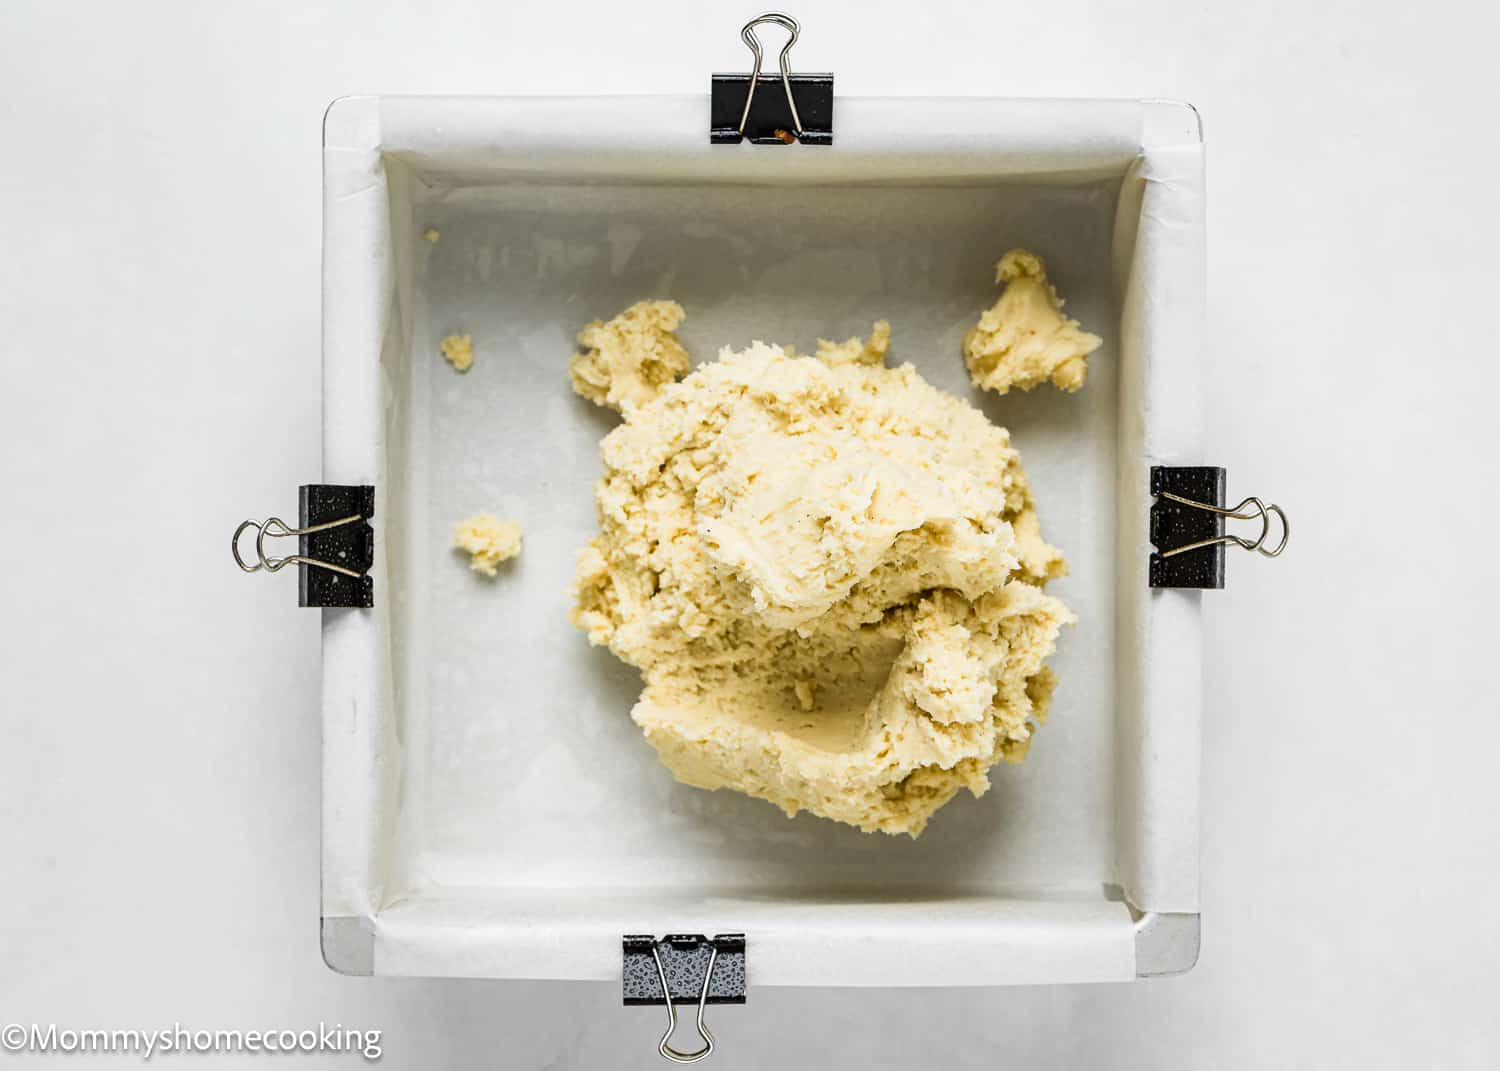 egg-free sugar cookie dough into a baking pan.